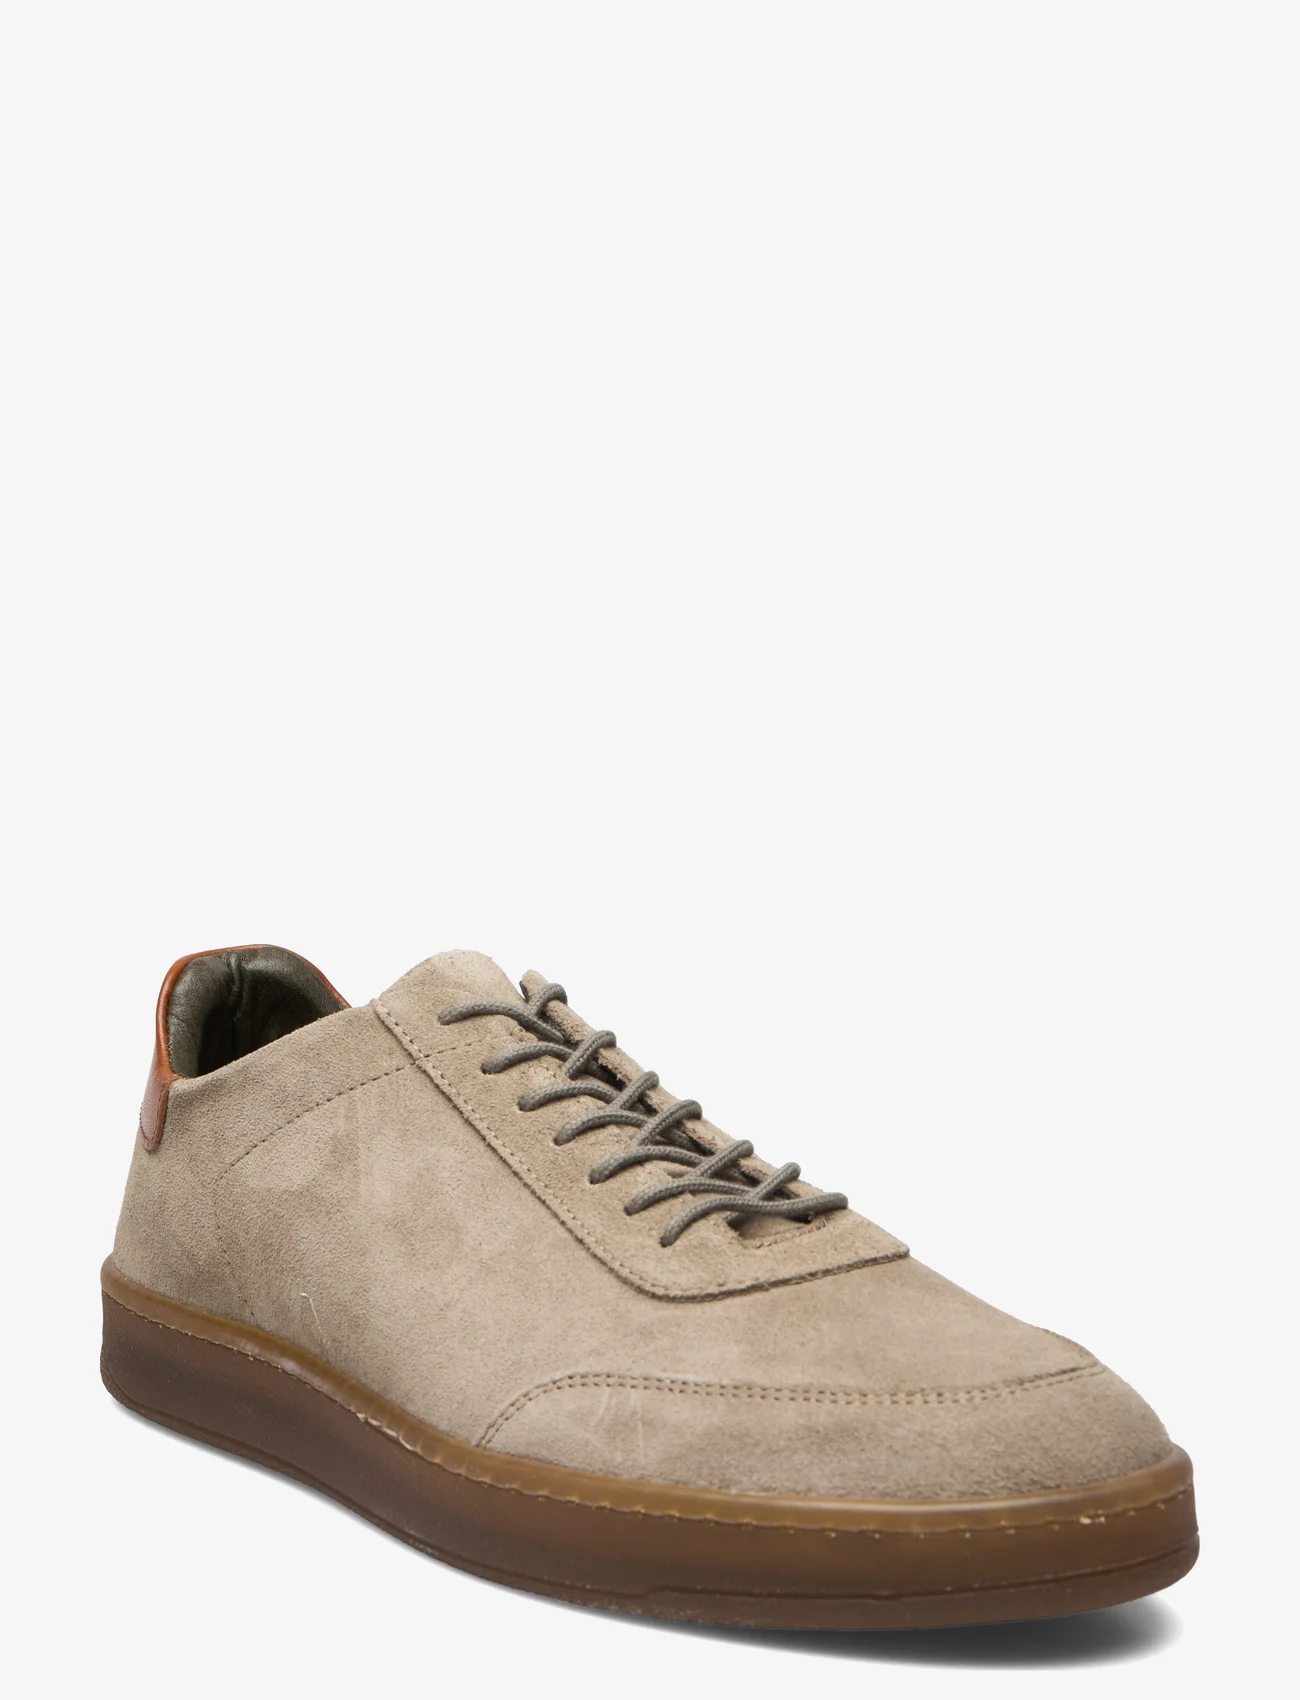 Bianco - BIACAMILO Sneaker Suede - low tops - light olive - 0